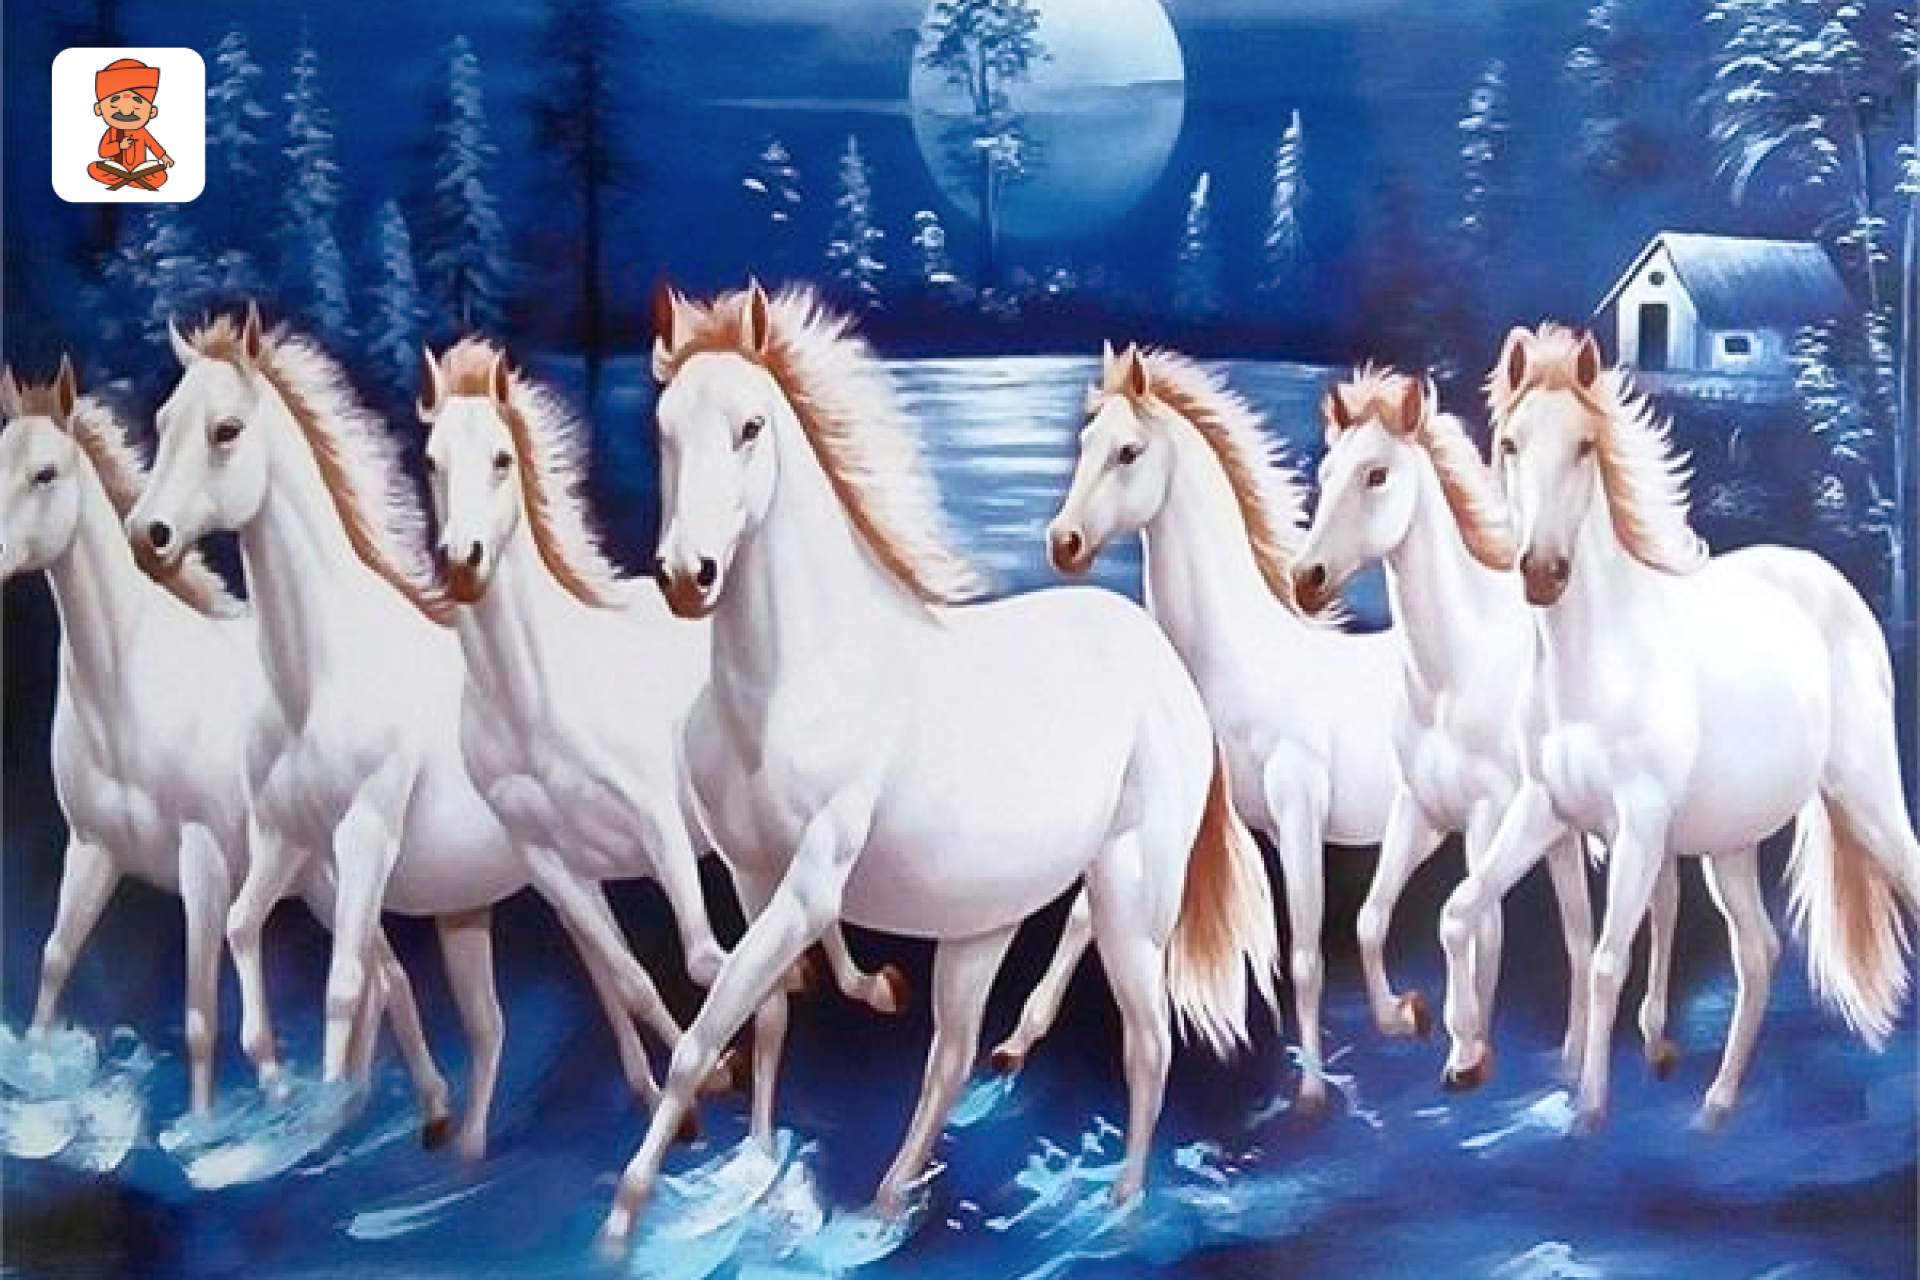 वास्तु शास्त्र: सात सफेद घोड़ों की तस्वीर को क्यों माना जाता है महत्वपूर्ण, जानें इसका रहस्य